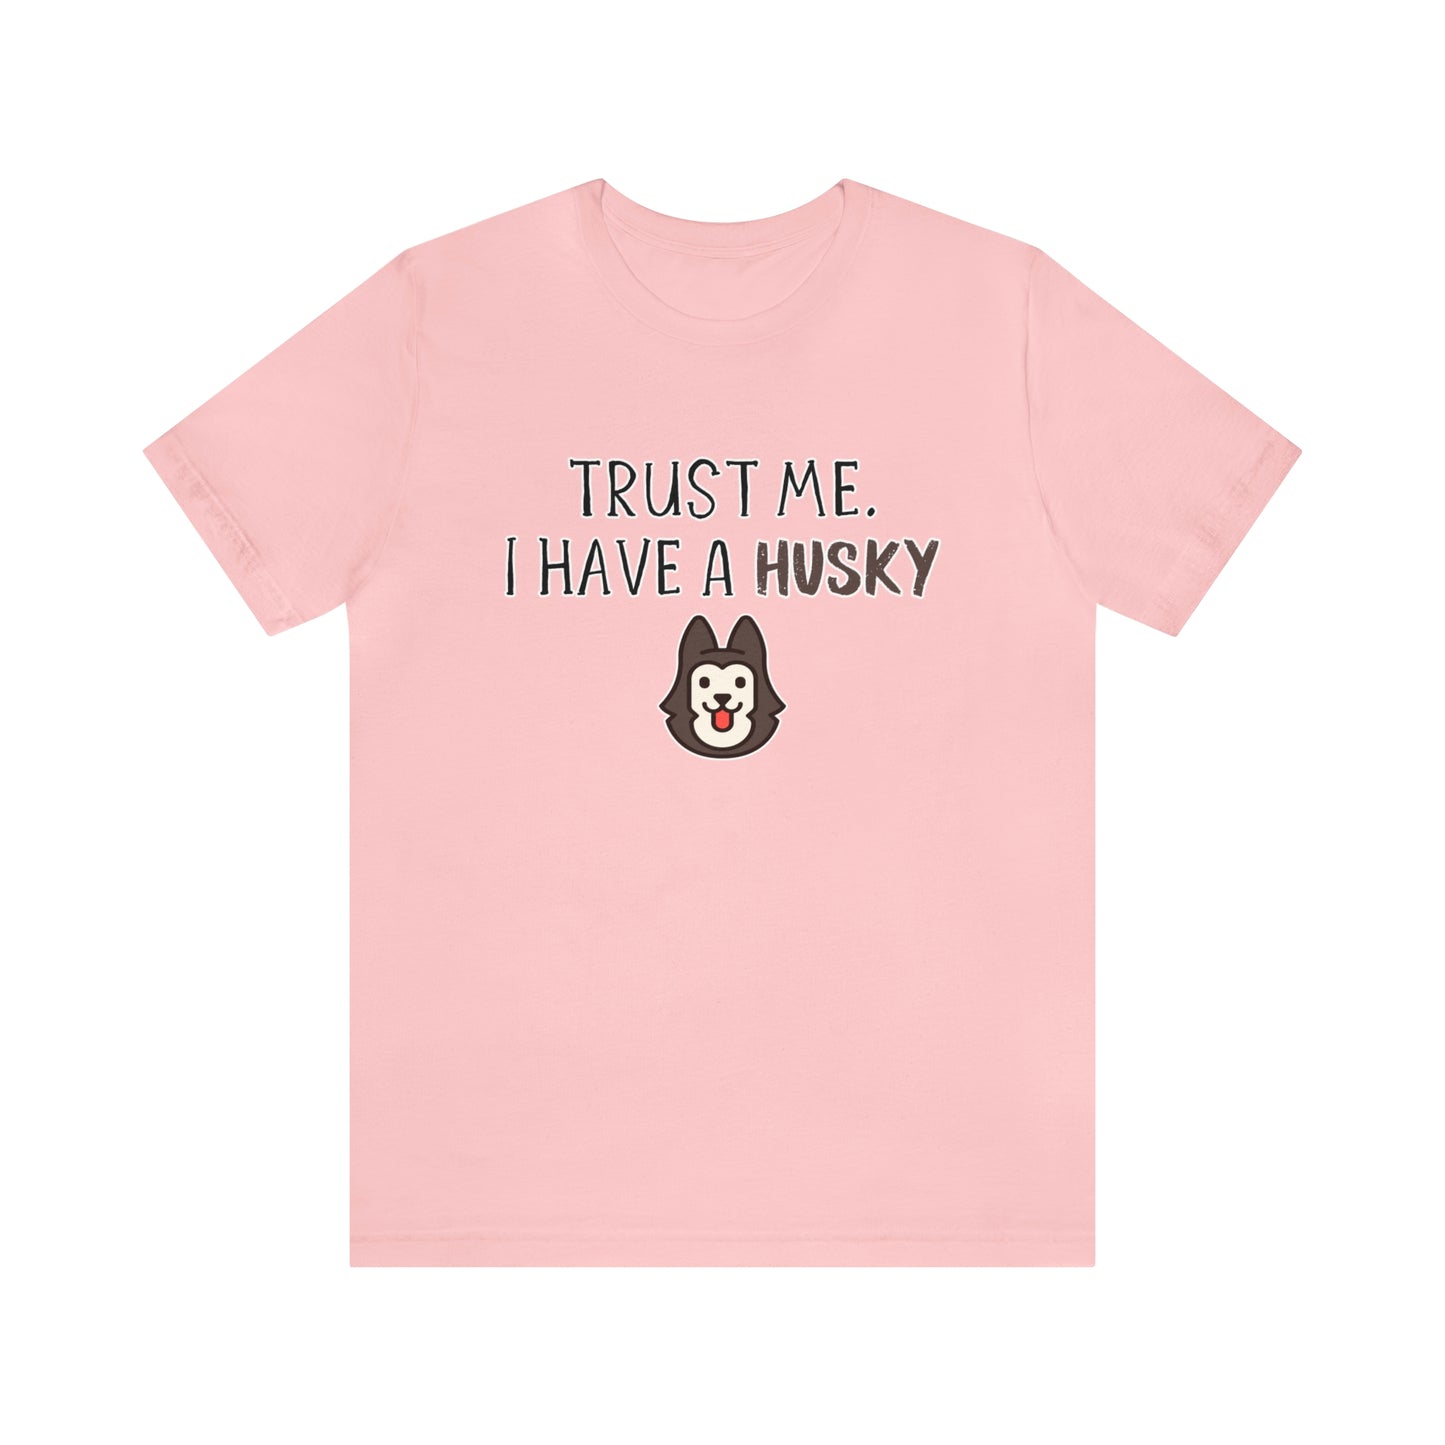 husky shirt pink